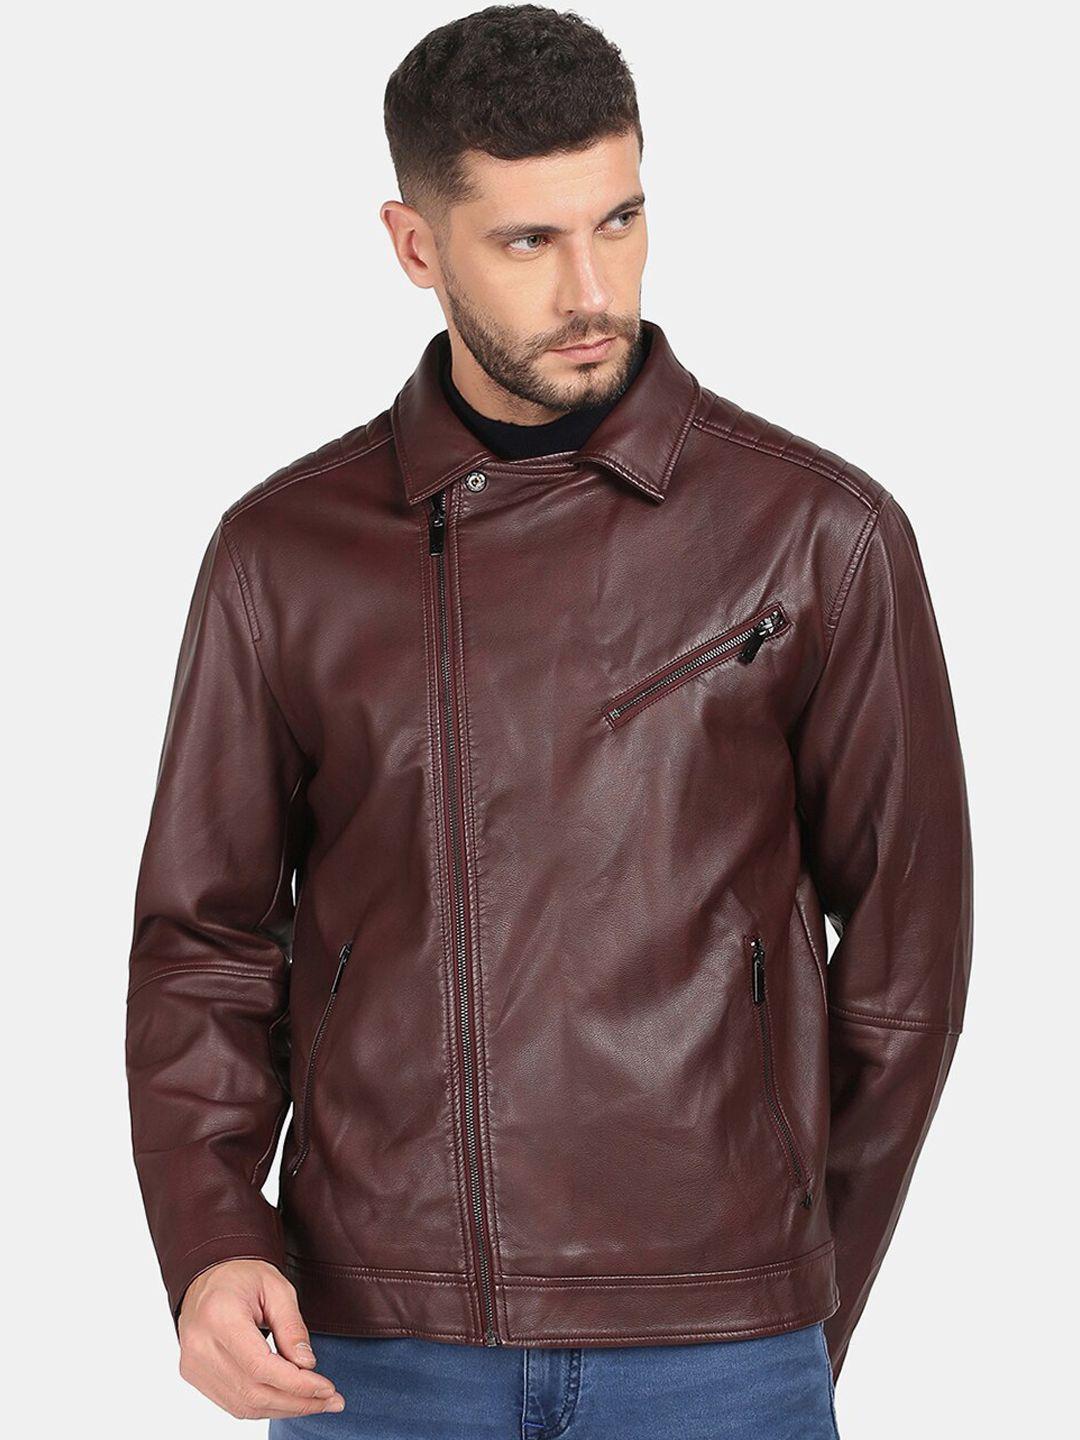 blackberrys-men-brown-leather-jacket